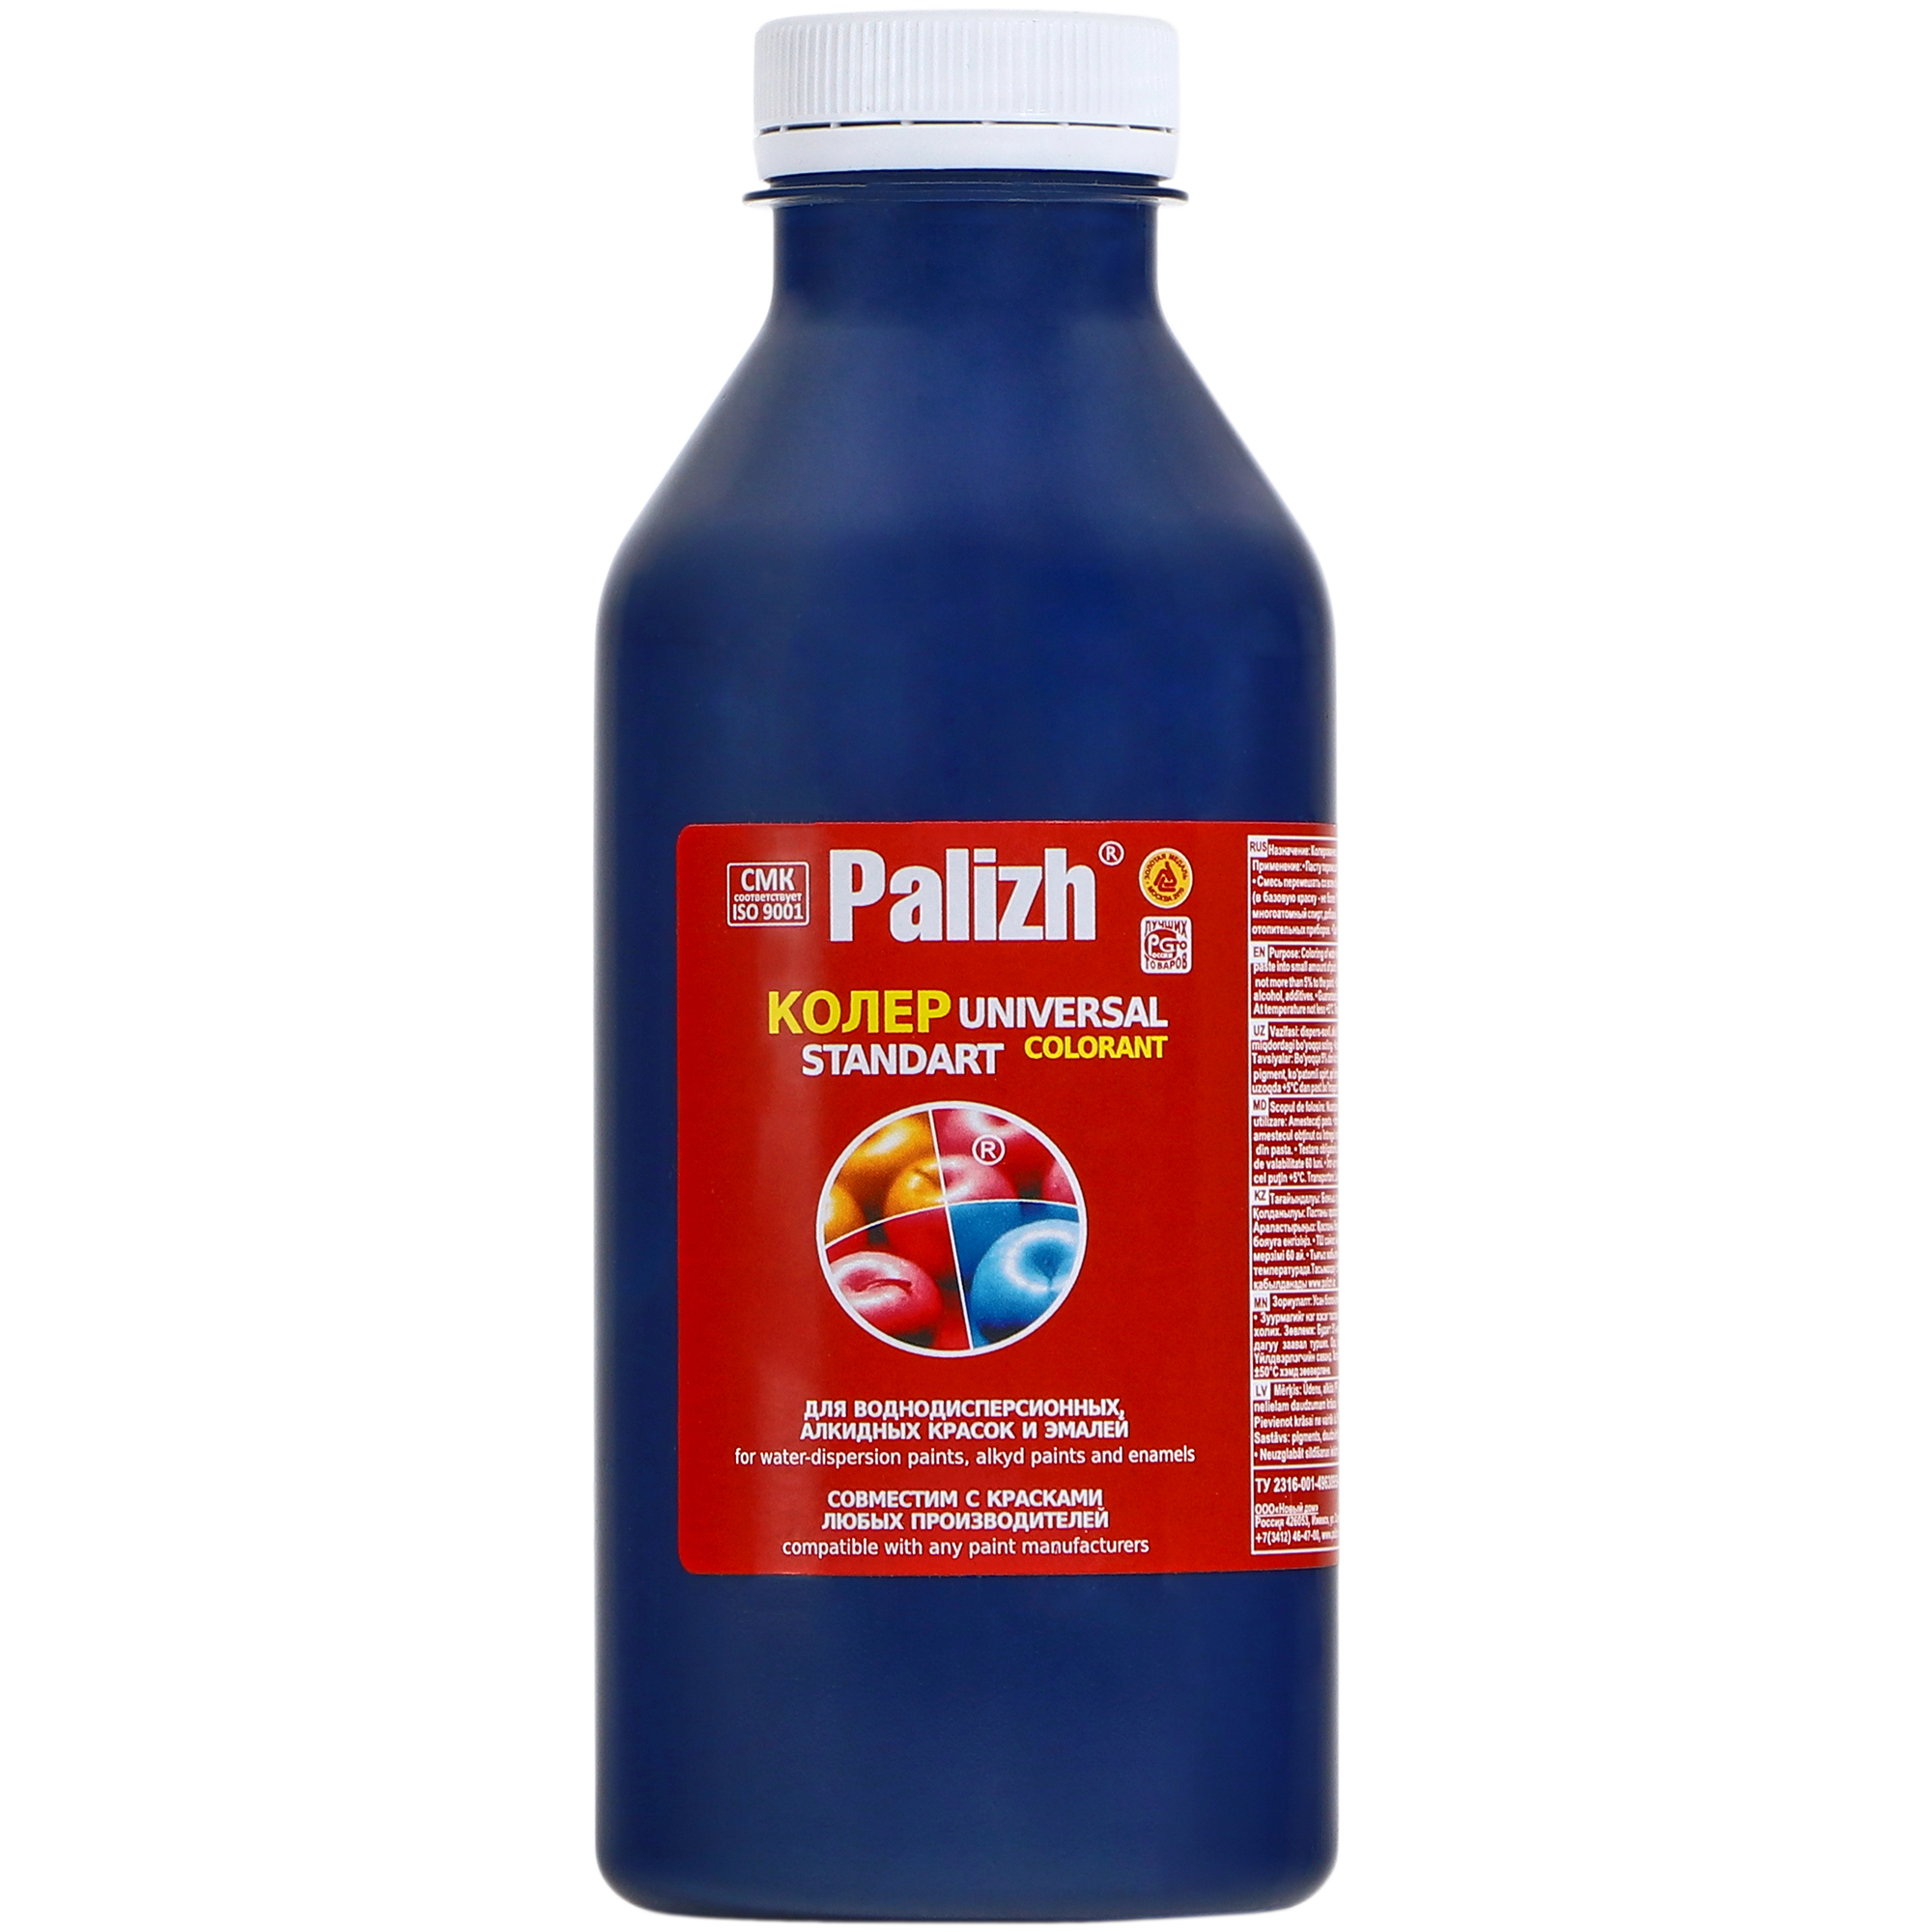 Паста универсальная колеровочная Palizh темно-синий - 450 мл паста универсальная колеровочная palizh темно синий 450 мл